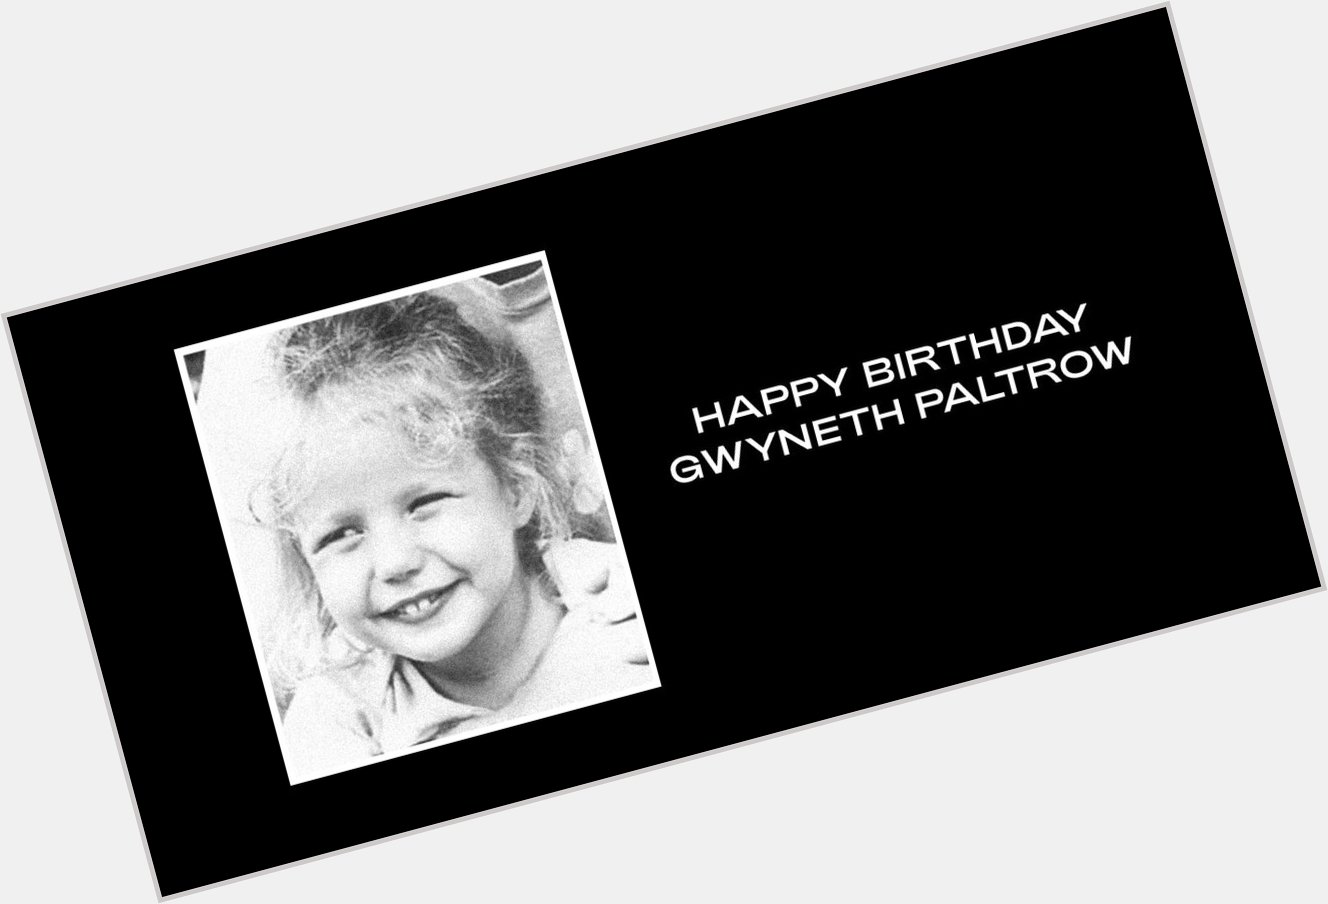  Happy Birthday Gwyneth Paltrow & Gwen Stefani  